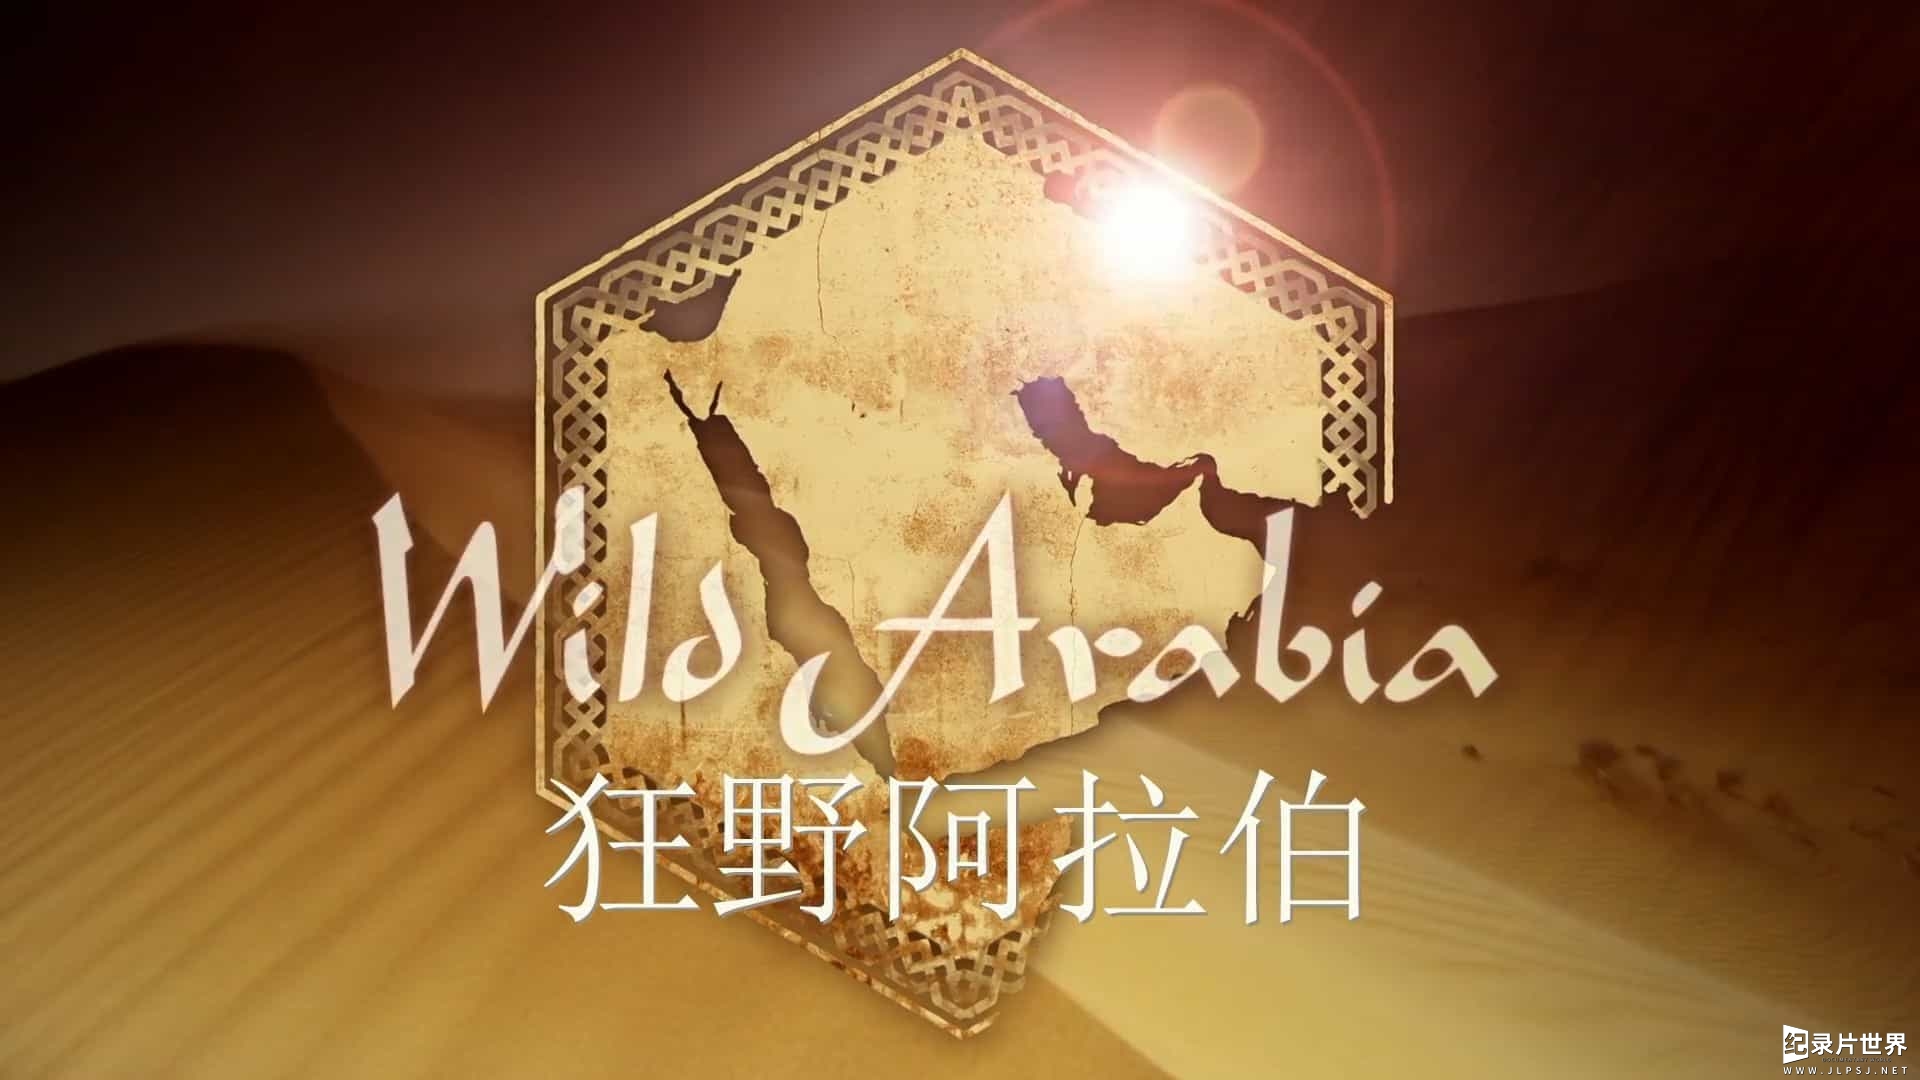 精选系列/BBC纪录片原版《野性阿拉伯/狂野阿拉伯 Wild Arabia》全3集 英语中字